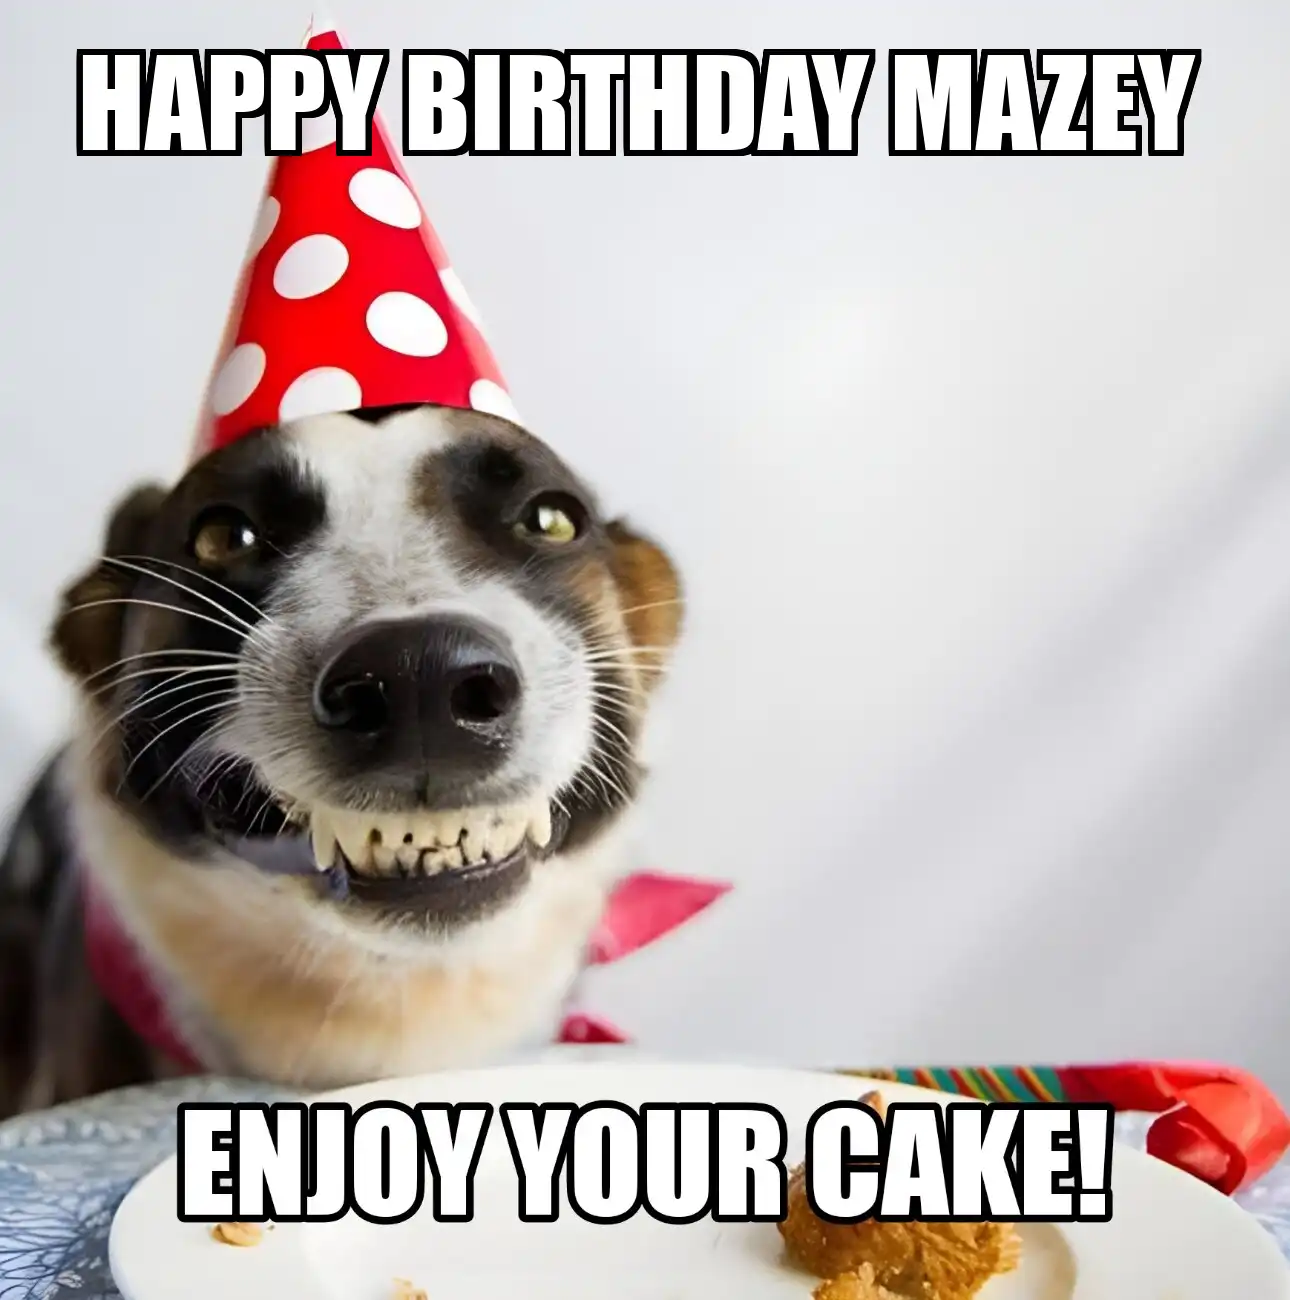 Happy Birthday Mazey Enjoy Your Cake Dog Meme